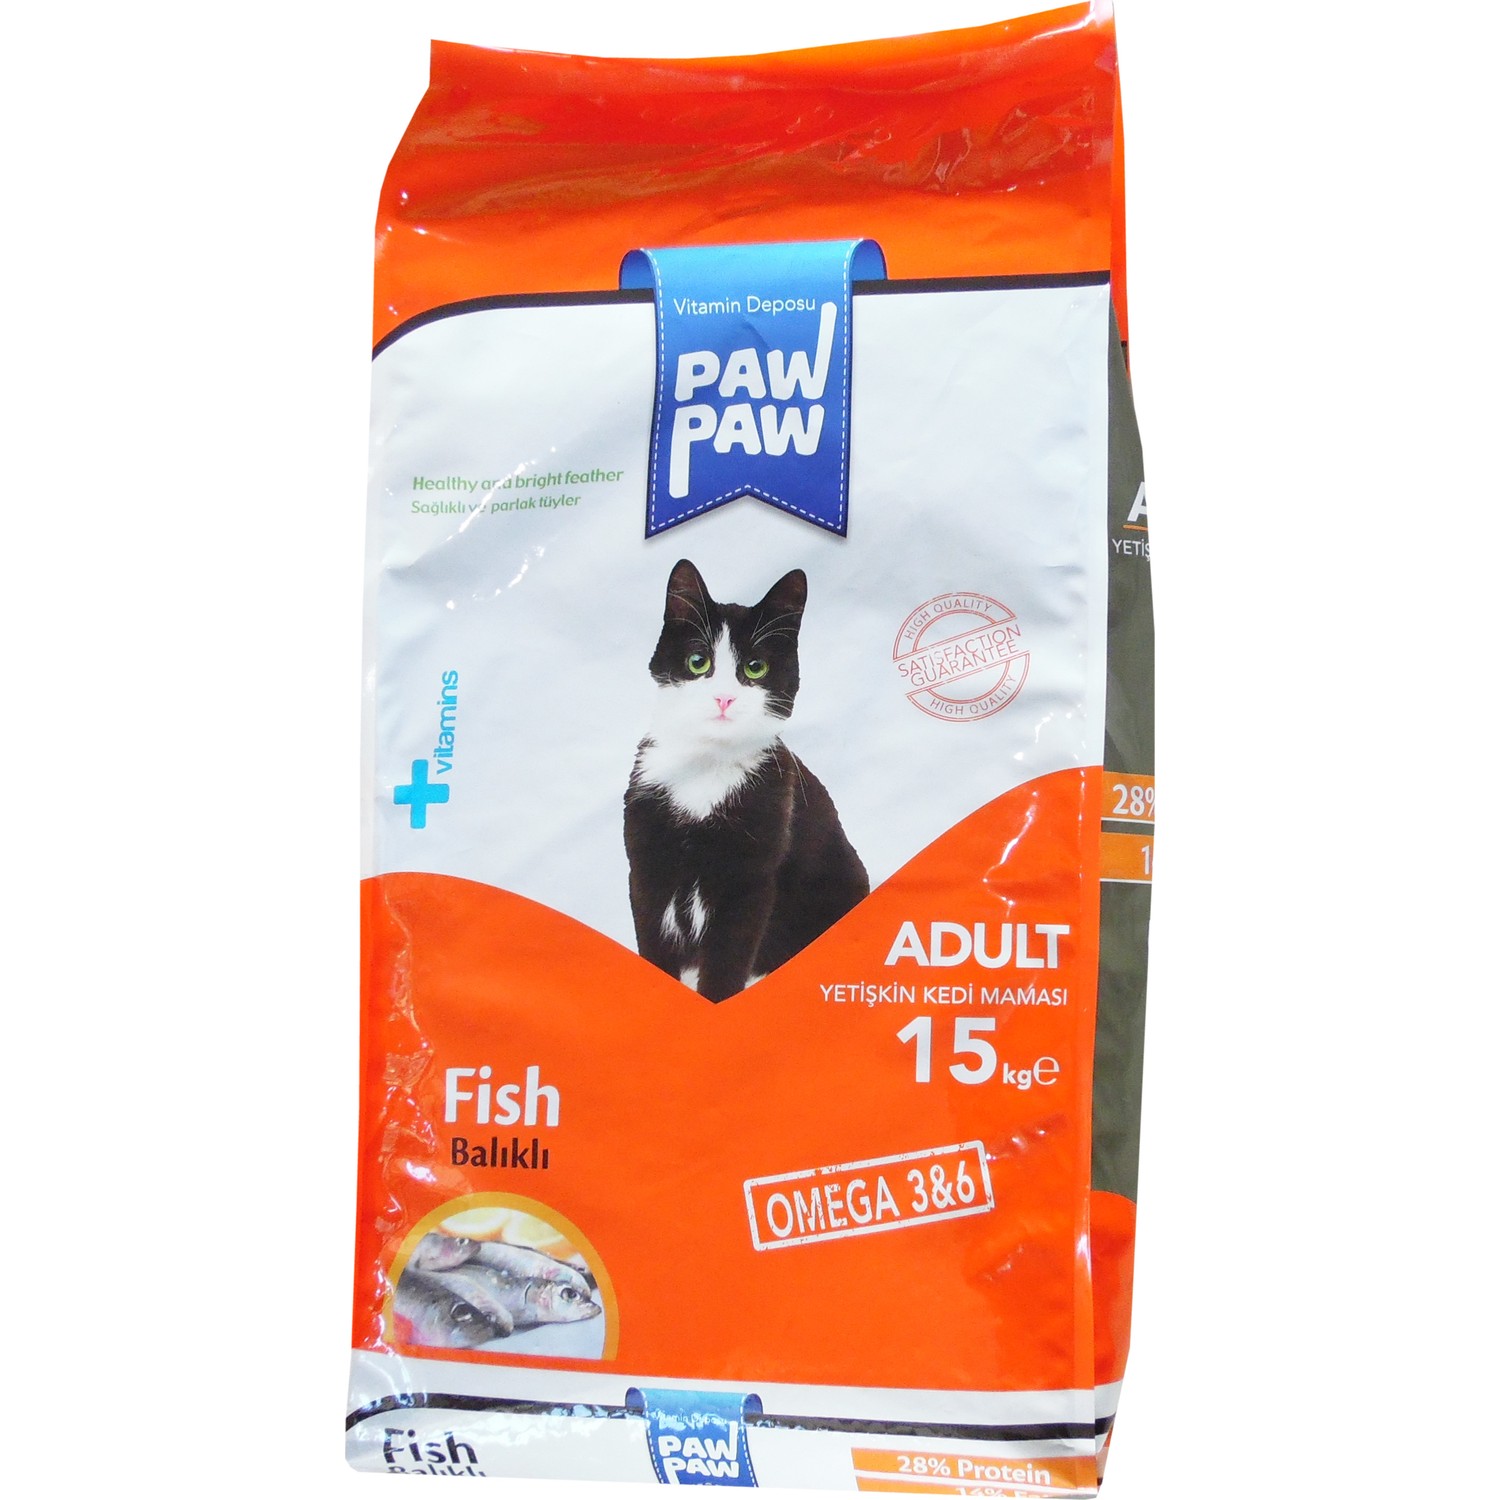 Pawpaw Balıklı Yetişkin Kedi Maması 15 Kg Fiyatı